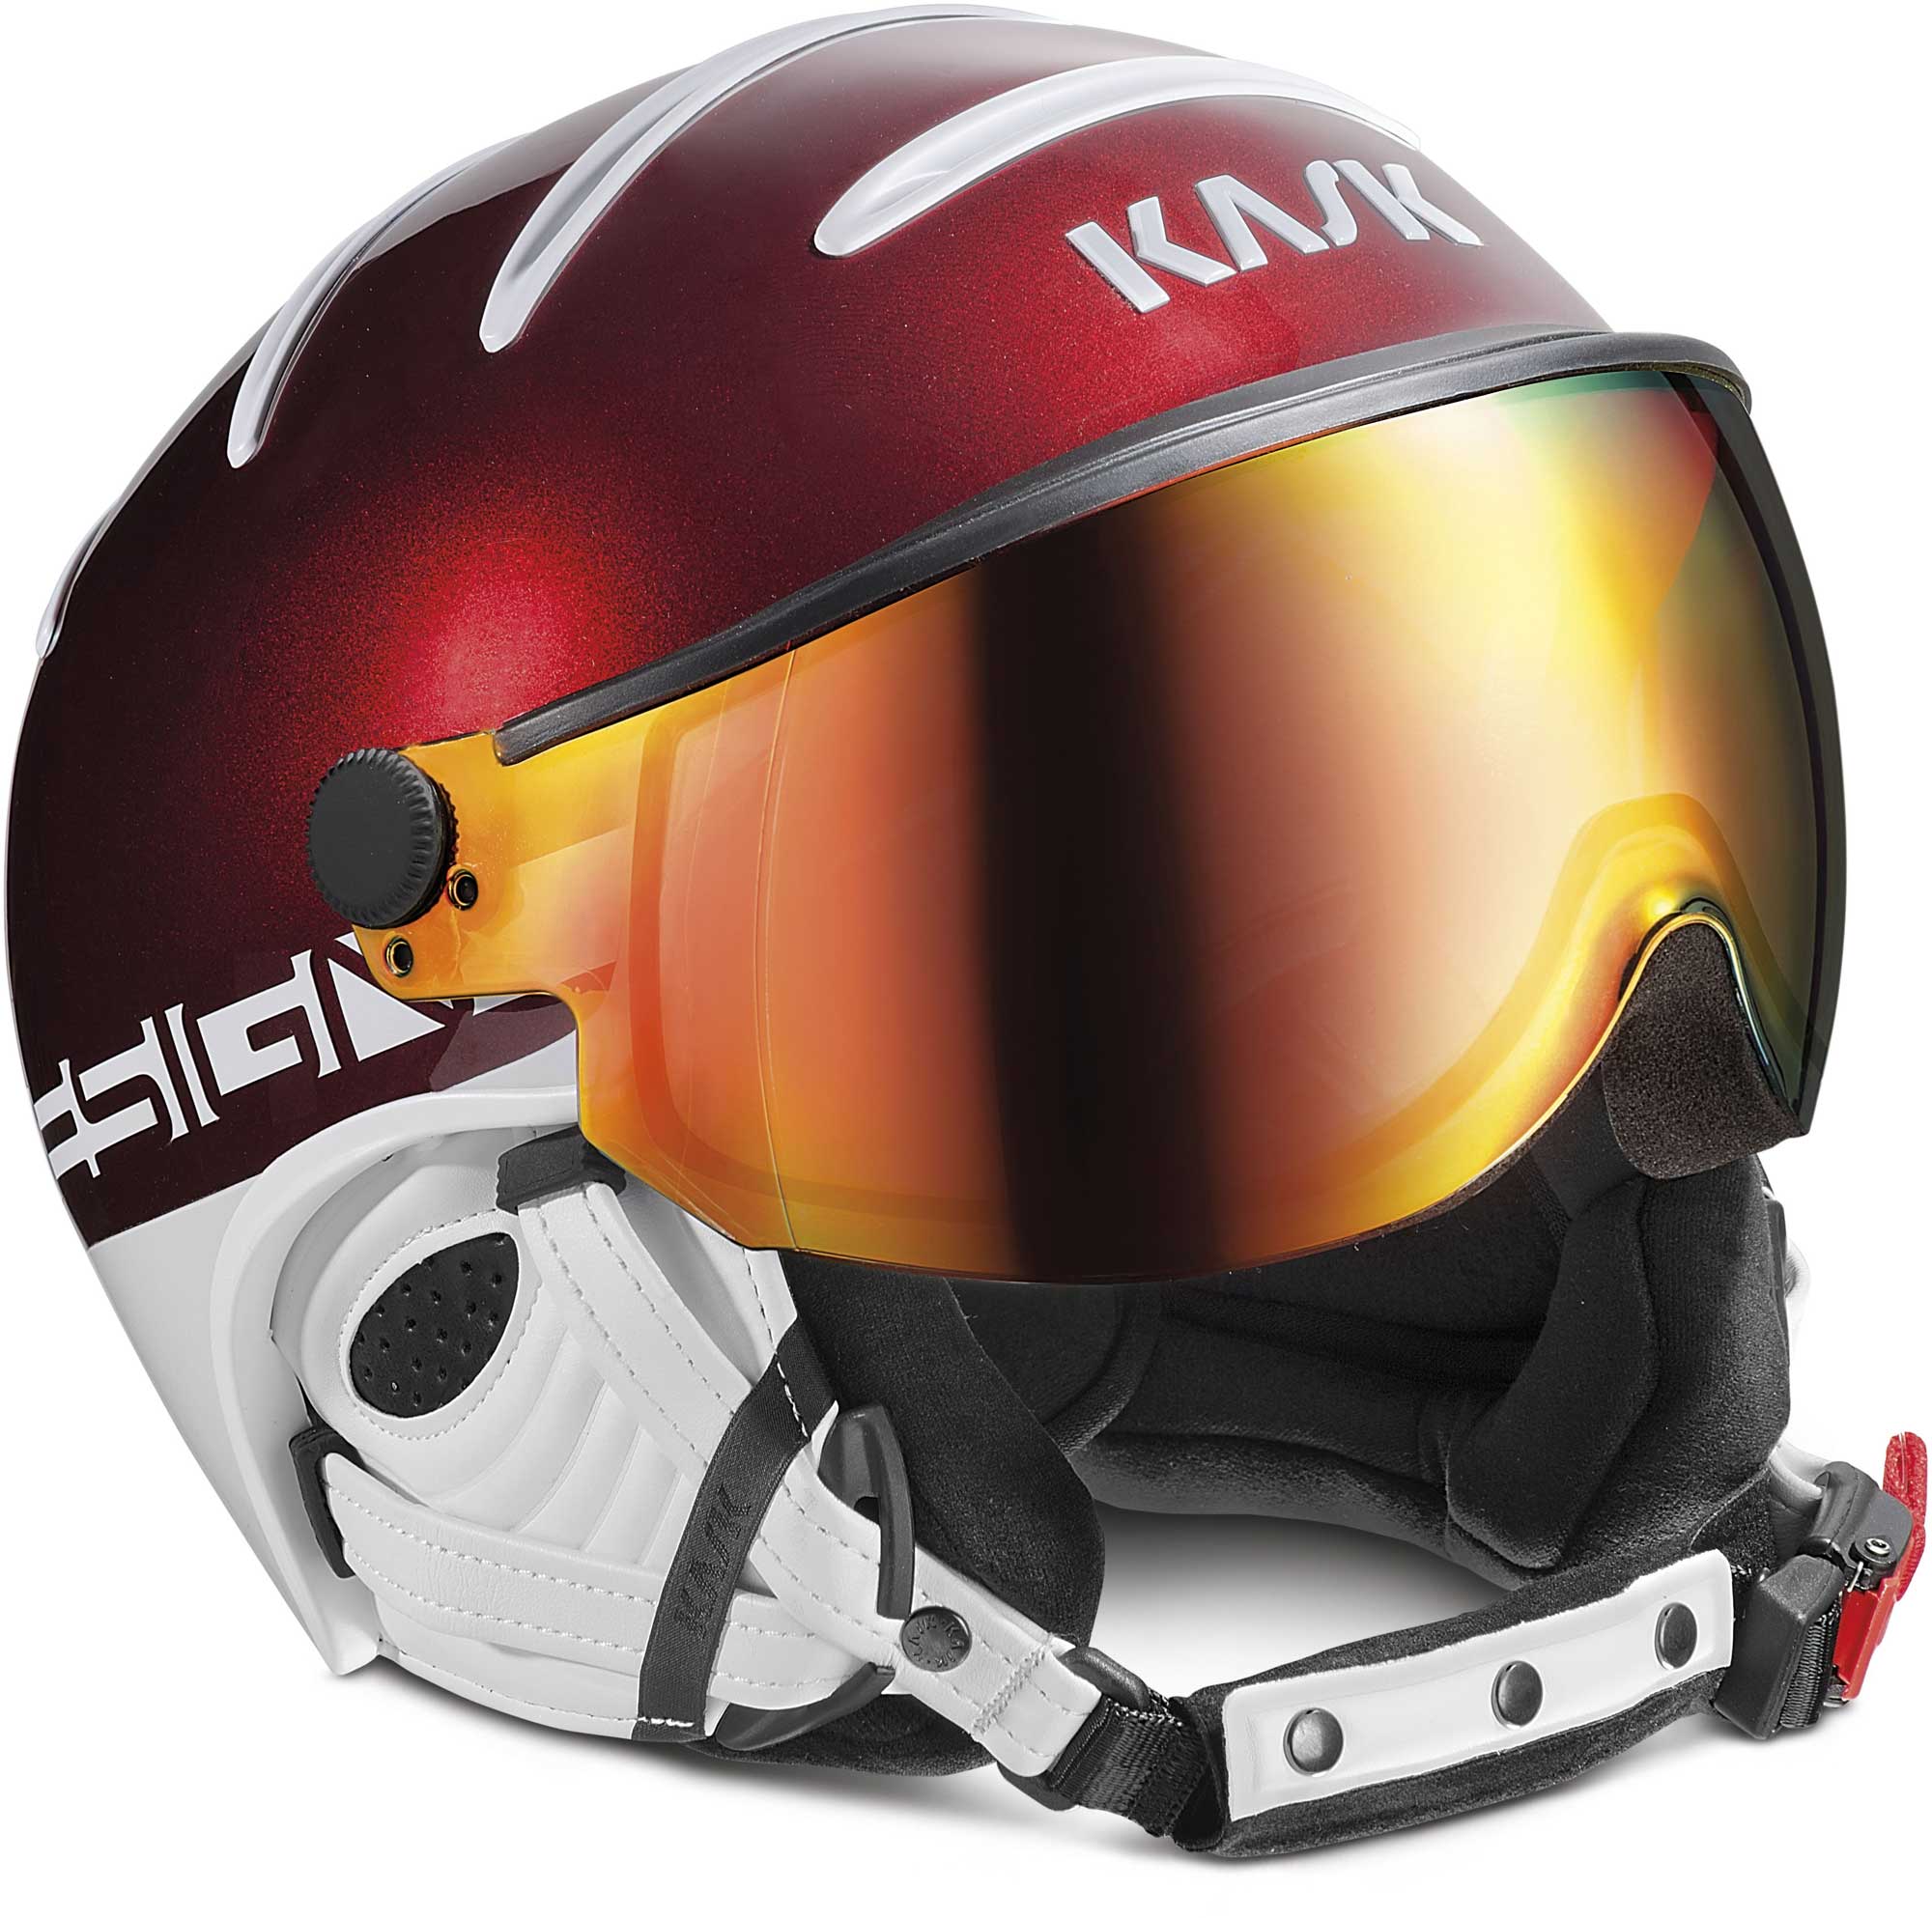 Ski helmet